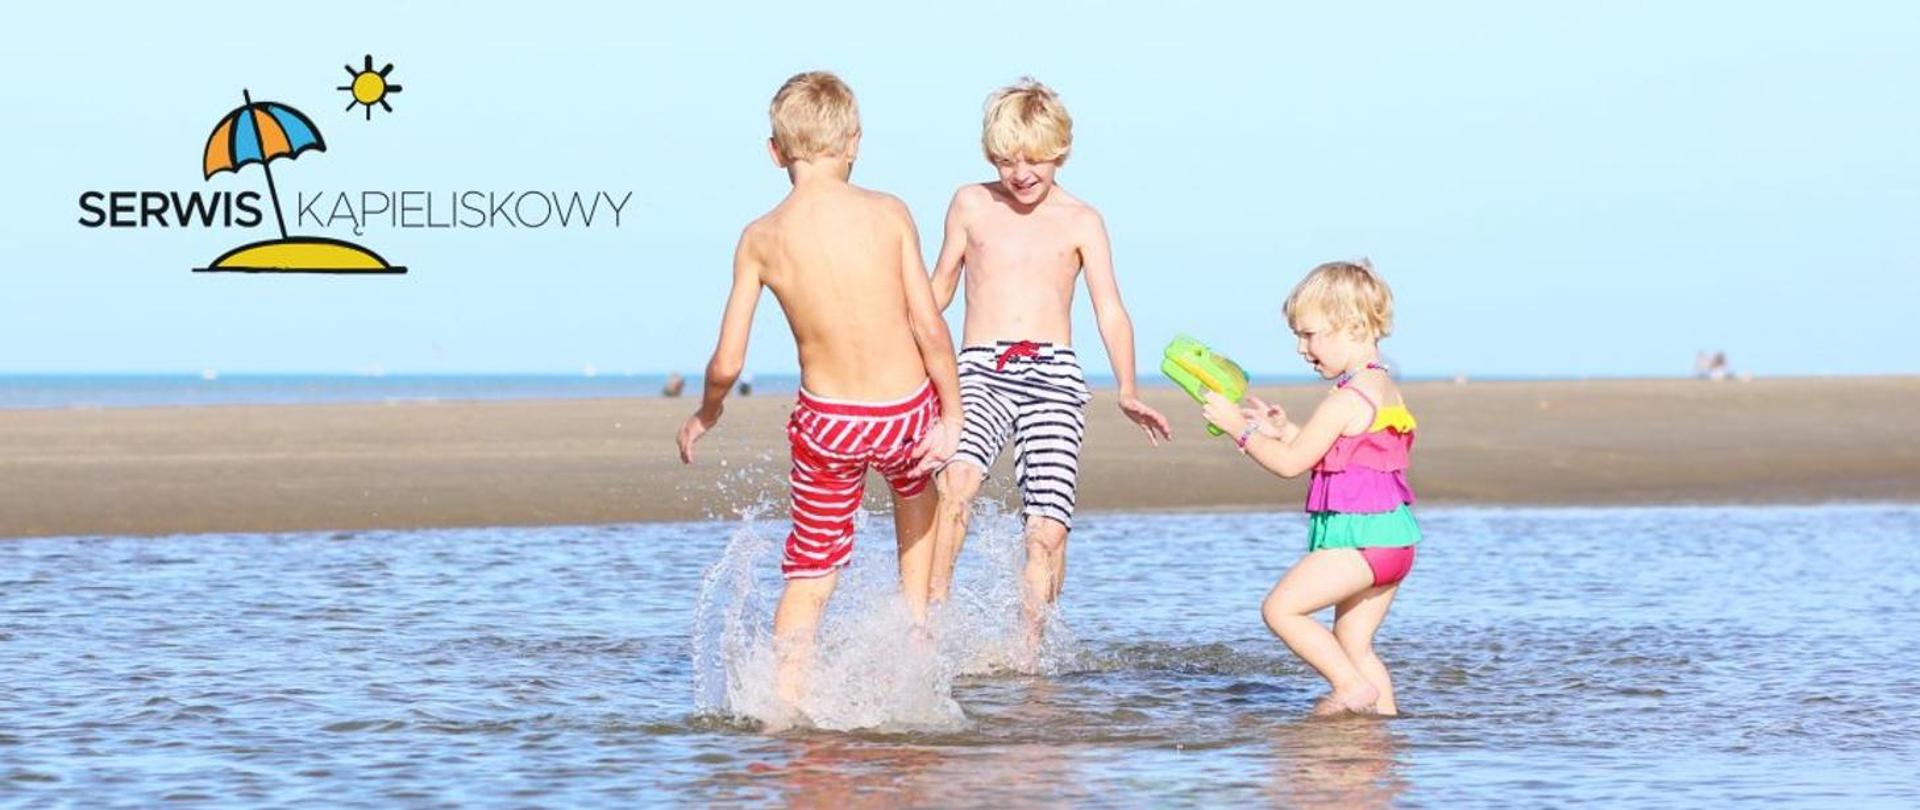 Zdjęcie przedstawia trójkę dzieci bawiących się w wodzie na plaży. 